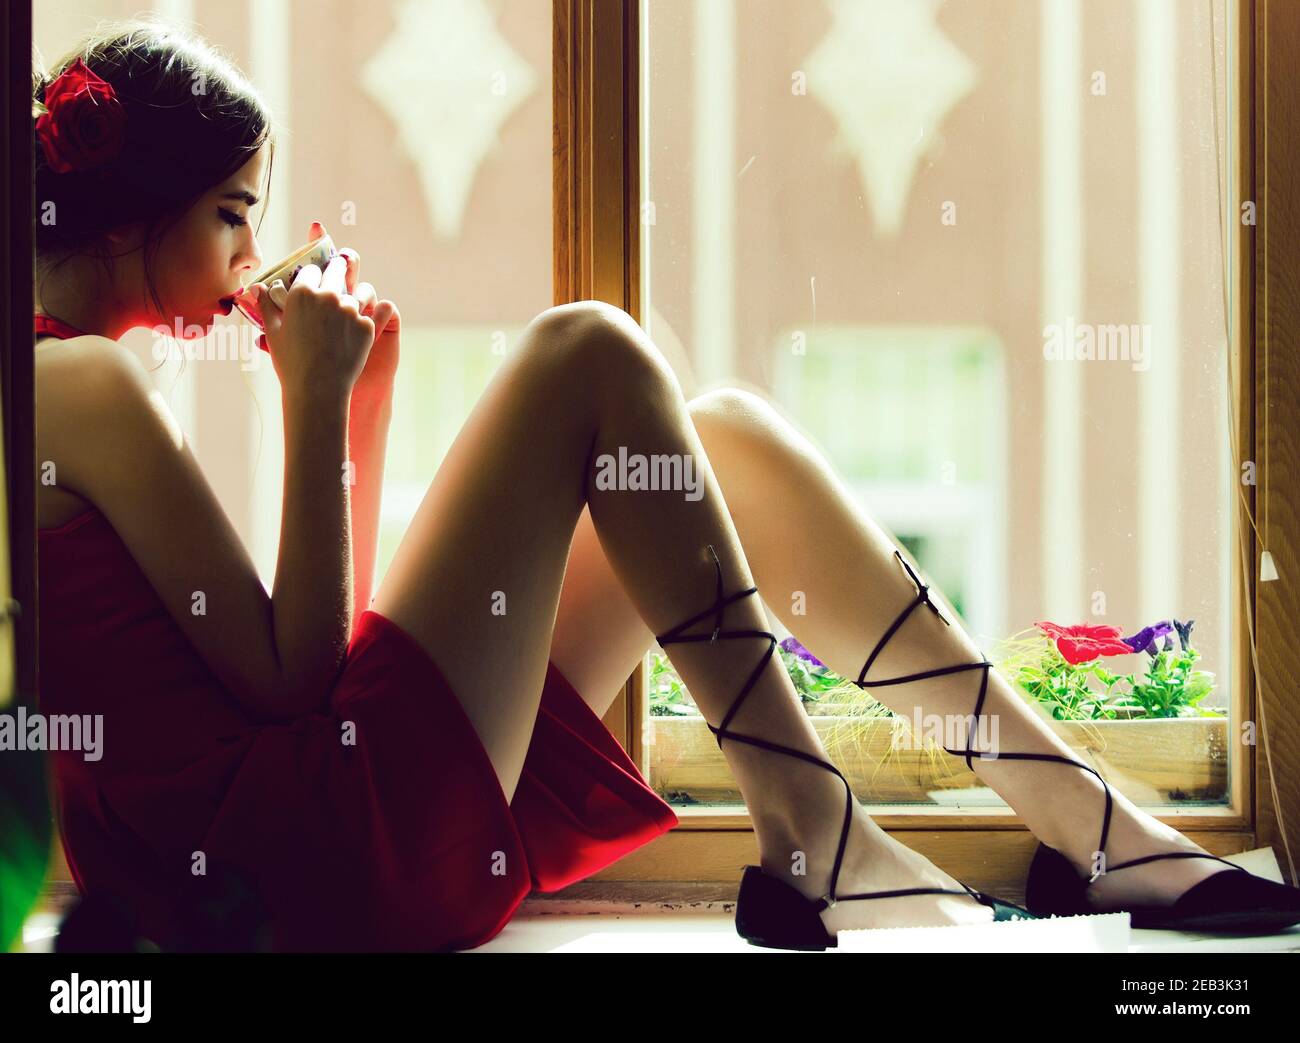 Mädchen in rotem Kleid und Rosenblüte im Haar sitzen am Fenster trinken Tee oder Kaffee aus Tasse, spanische romantische Frau denken. Stockfoto